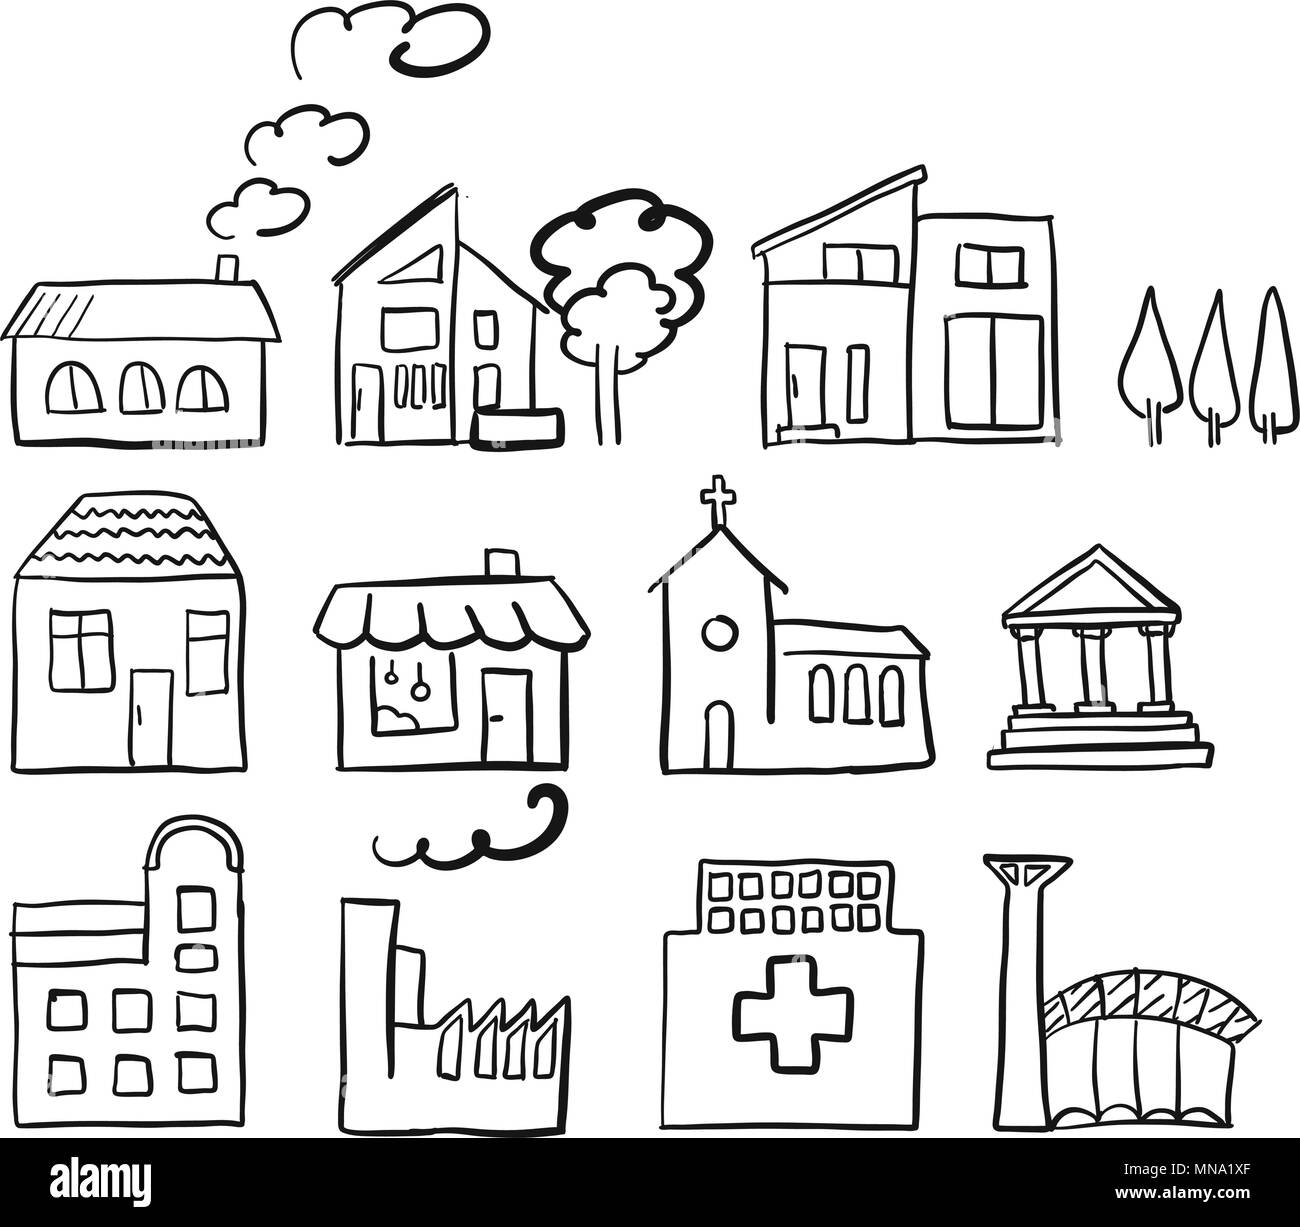 Différents types de maison, restauration rapide croquis dessinés à la main, vecteur, vecteur silhouette stylo noir sur fond blanc Illustration de Vecteur